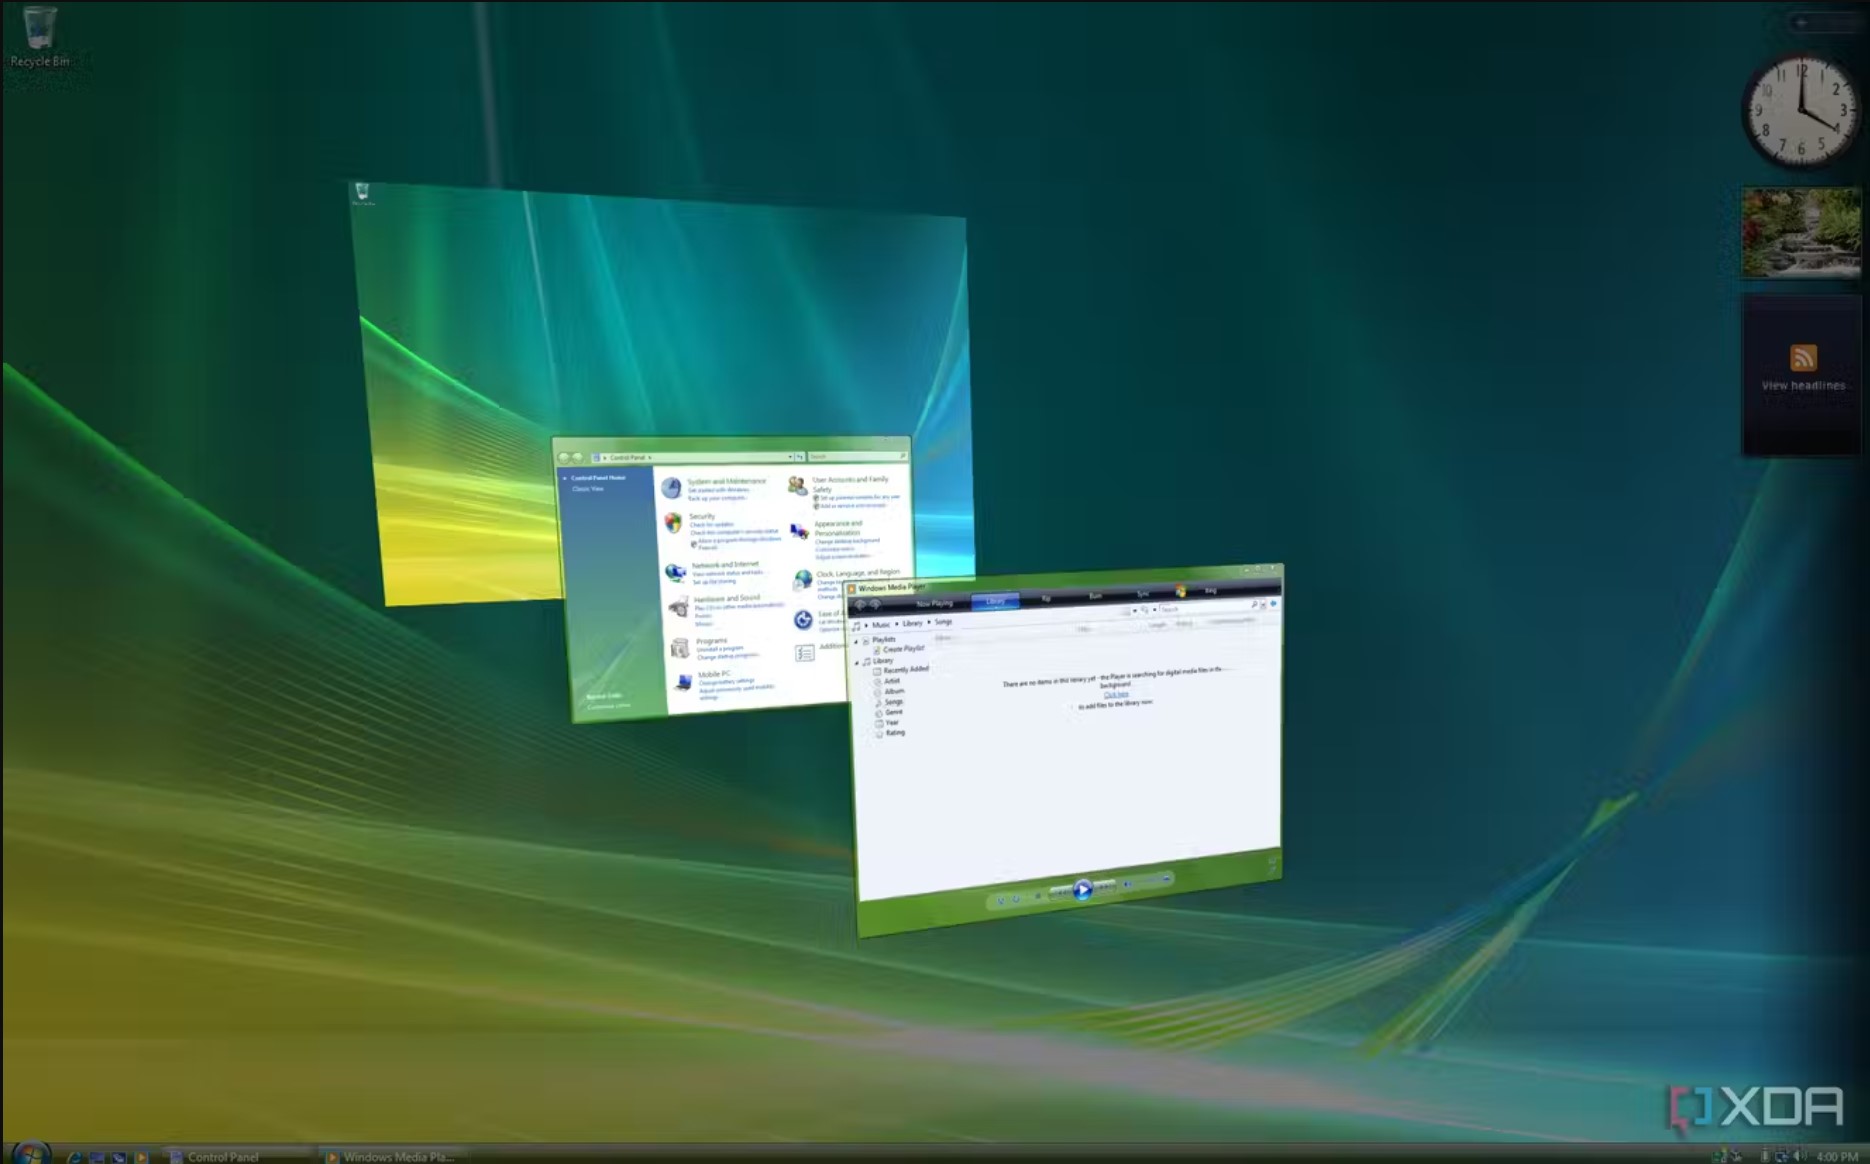 Nhìn lại Windows Vista, liệu có phải là một hệ điều hành tệ như chúng ta từng nghĩ?- Ảnh 1.